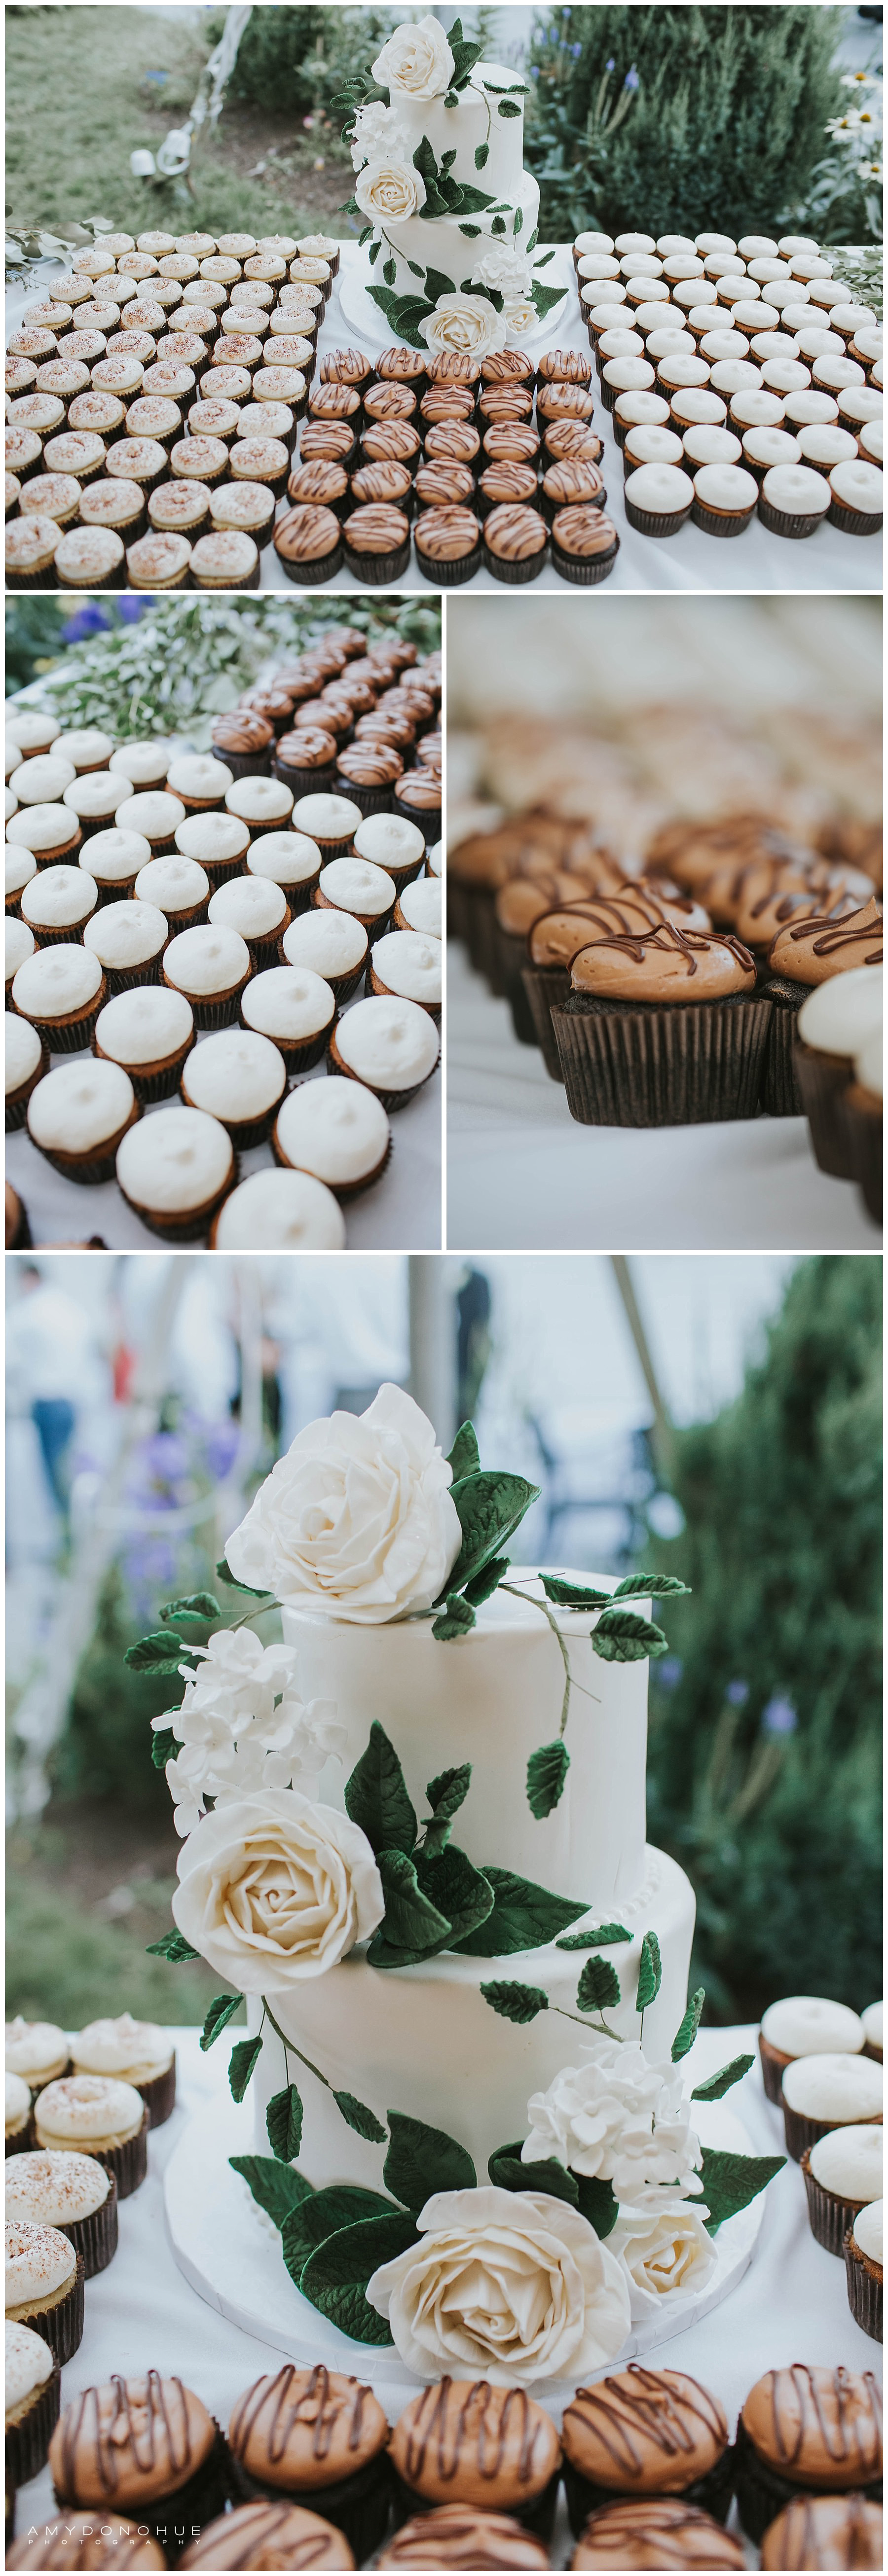 Wedding Cake | New Hampshire Wedding Photographer | © Amy Donohue Photography